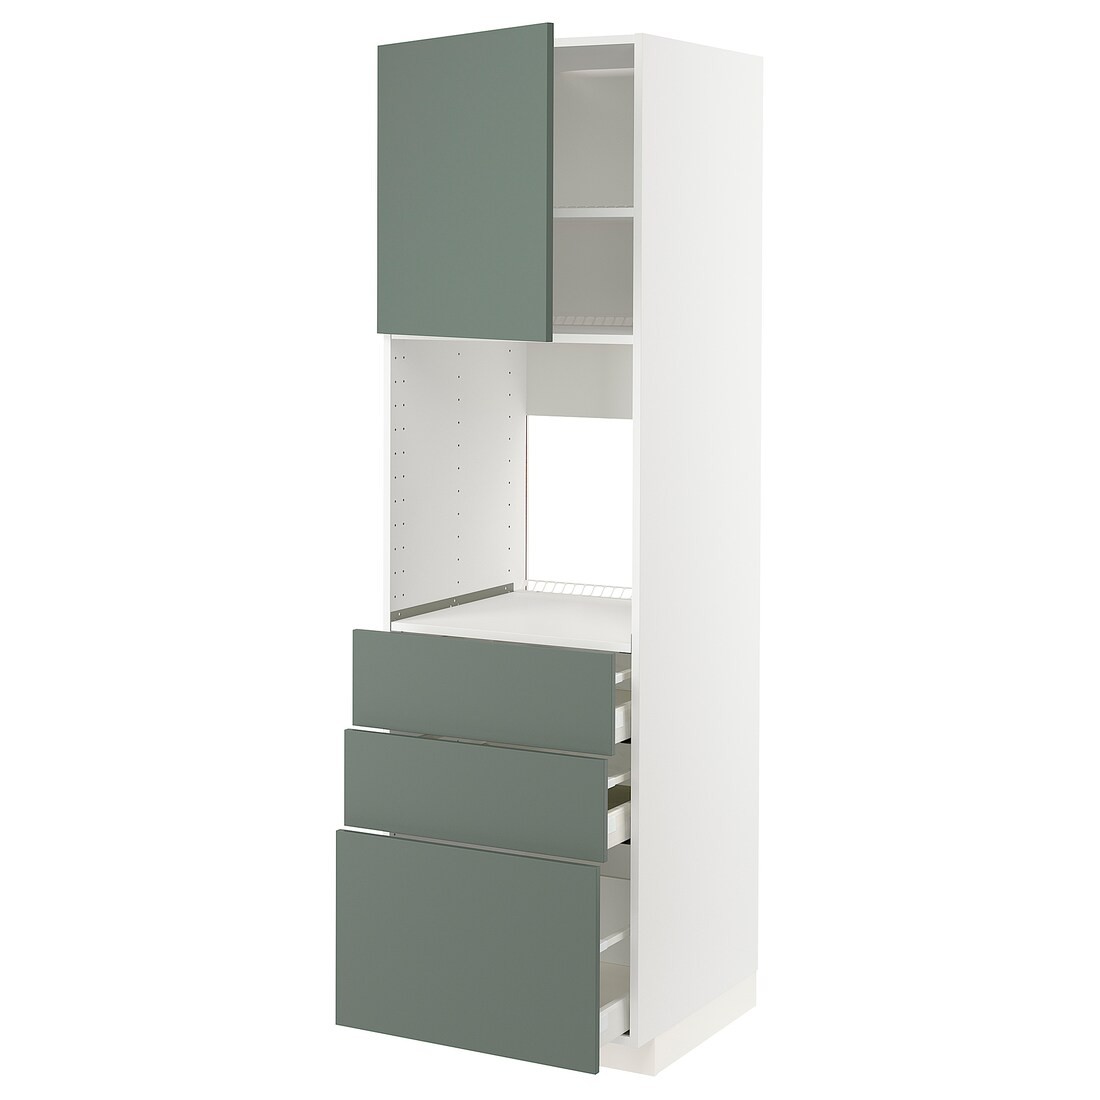 METOD МЕТОД / MAXIMERA МАКСИМЕРА Высокий шкаф для духовки, белый / Bodarp серо-зеленый, 60x60x200 см